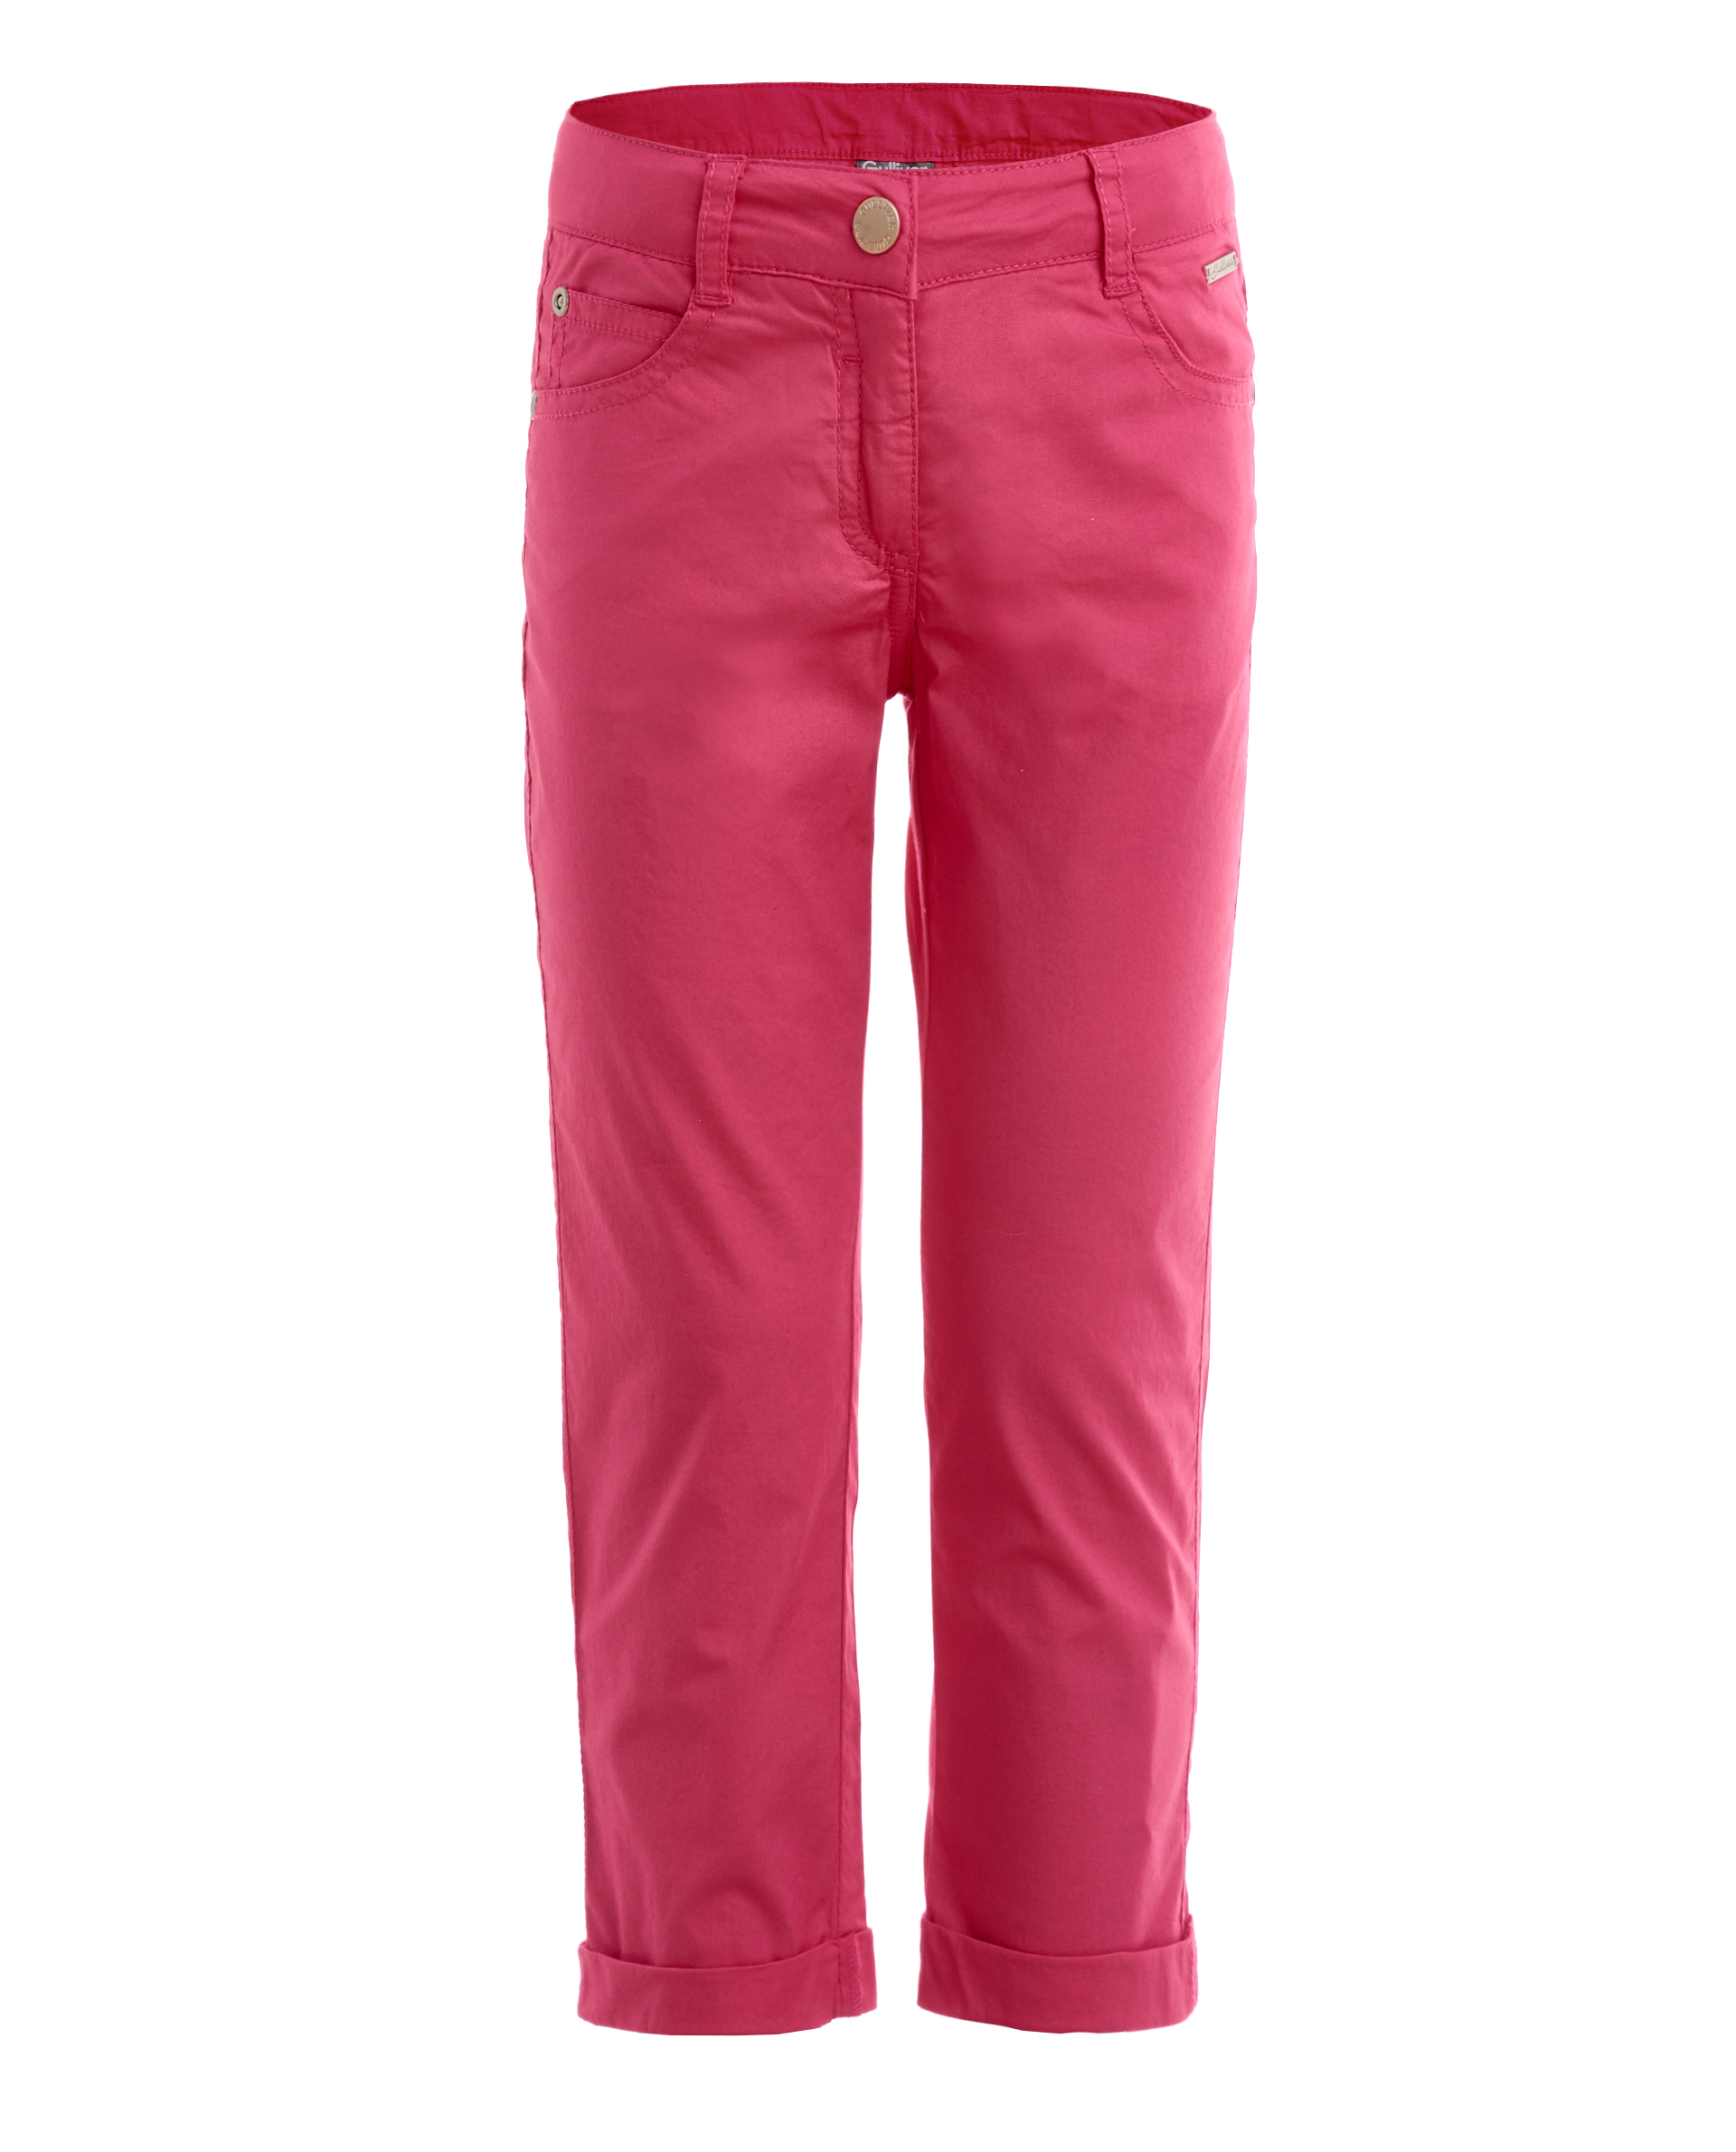 Купить 11902GMC6304, Розовые брюки Gulliver, розовый, 98, Женский, ВЕСНА/ЛЕТО 2019 (shop: GulliverMarket Gulliver Market)